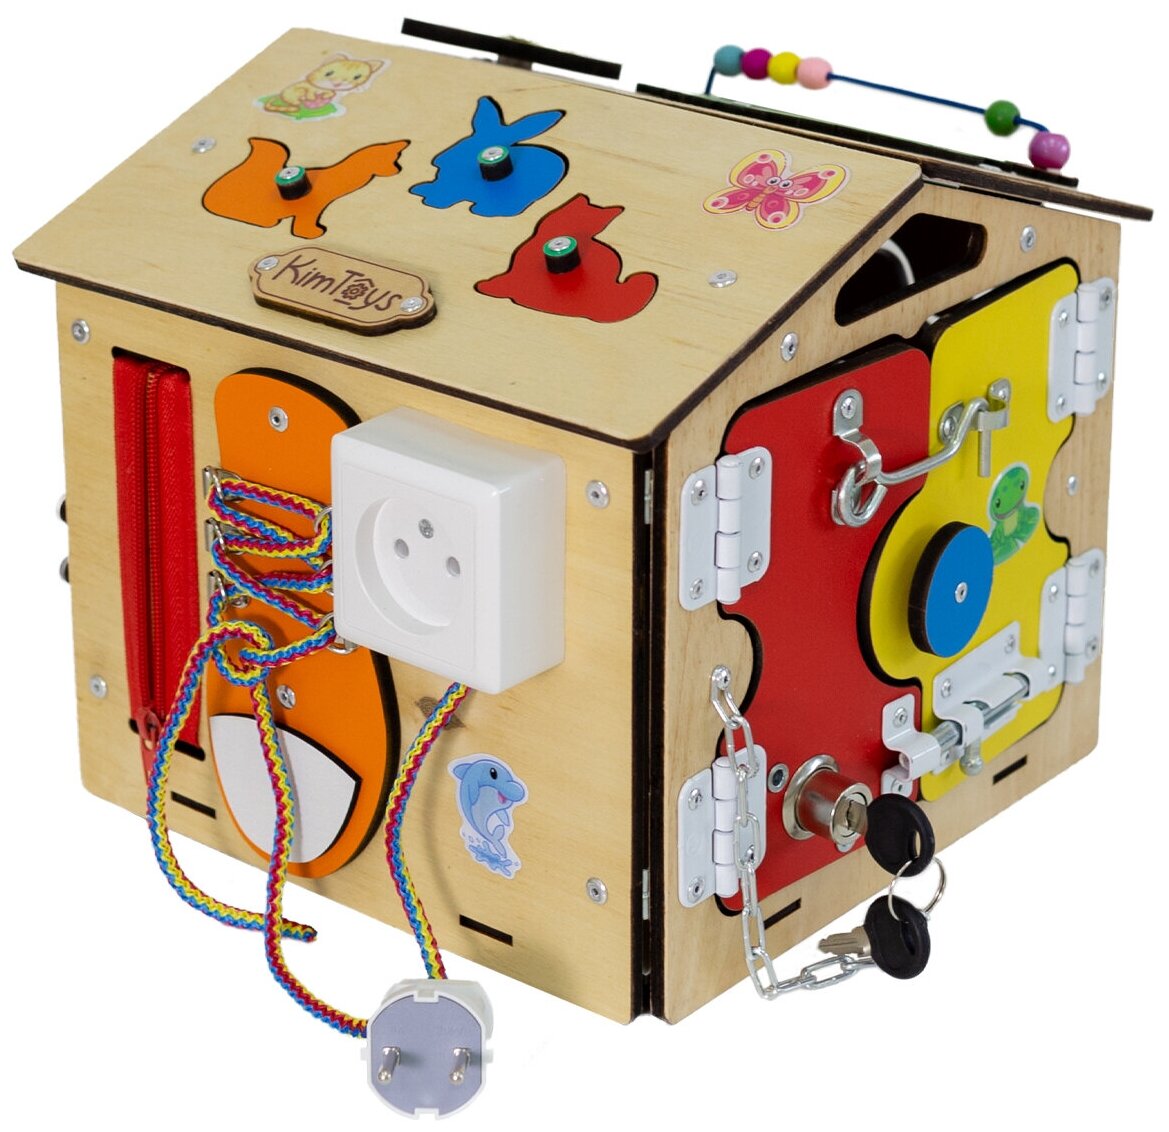 Бизиборд Домик Бизидом игрушки для девочек мальчиков подарки детям